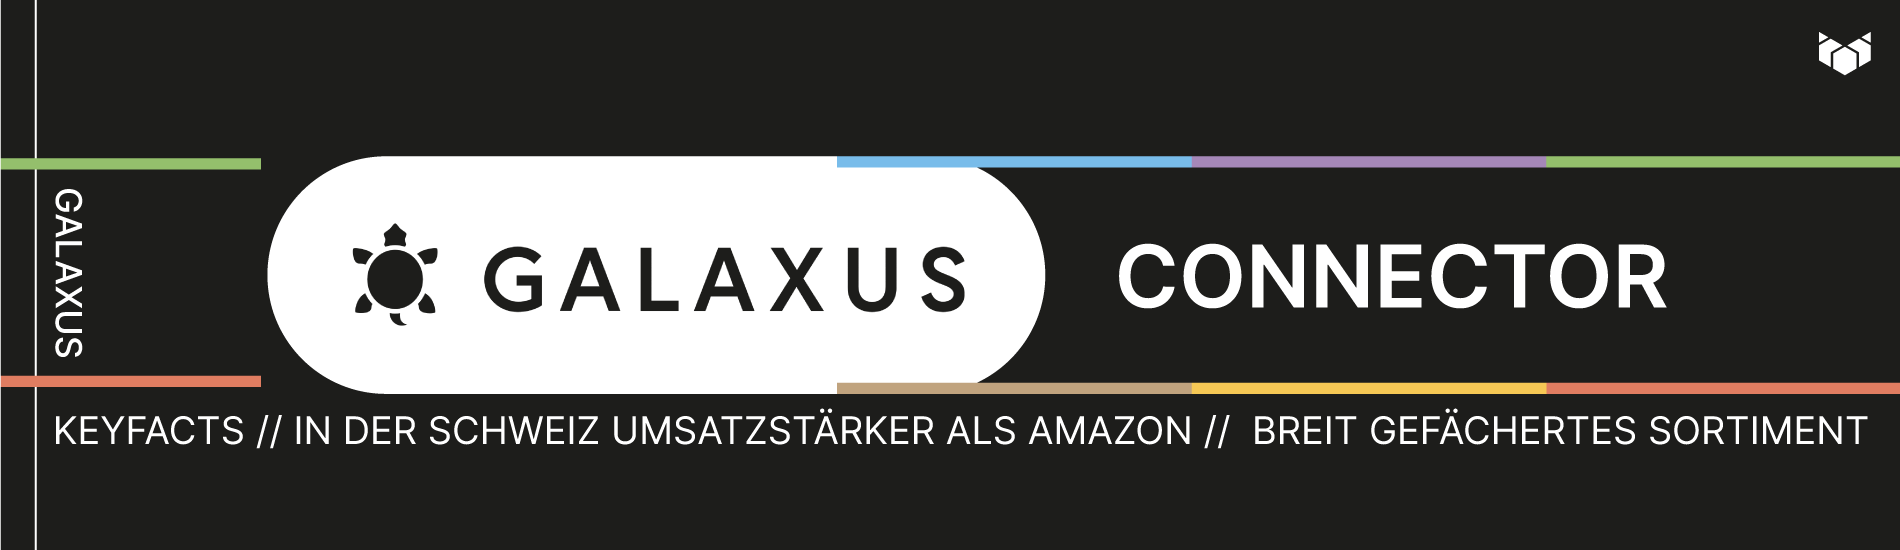 Grafik Galaxus Connector